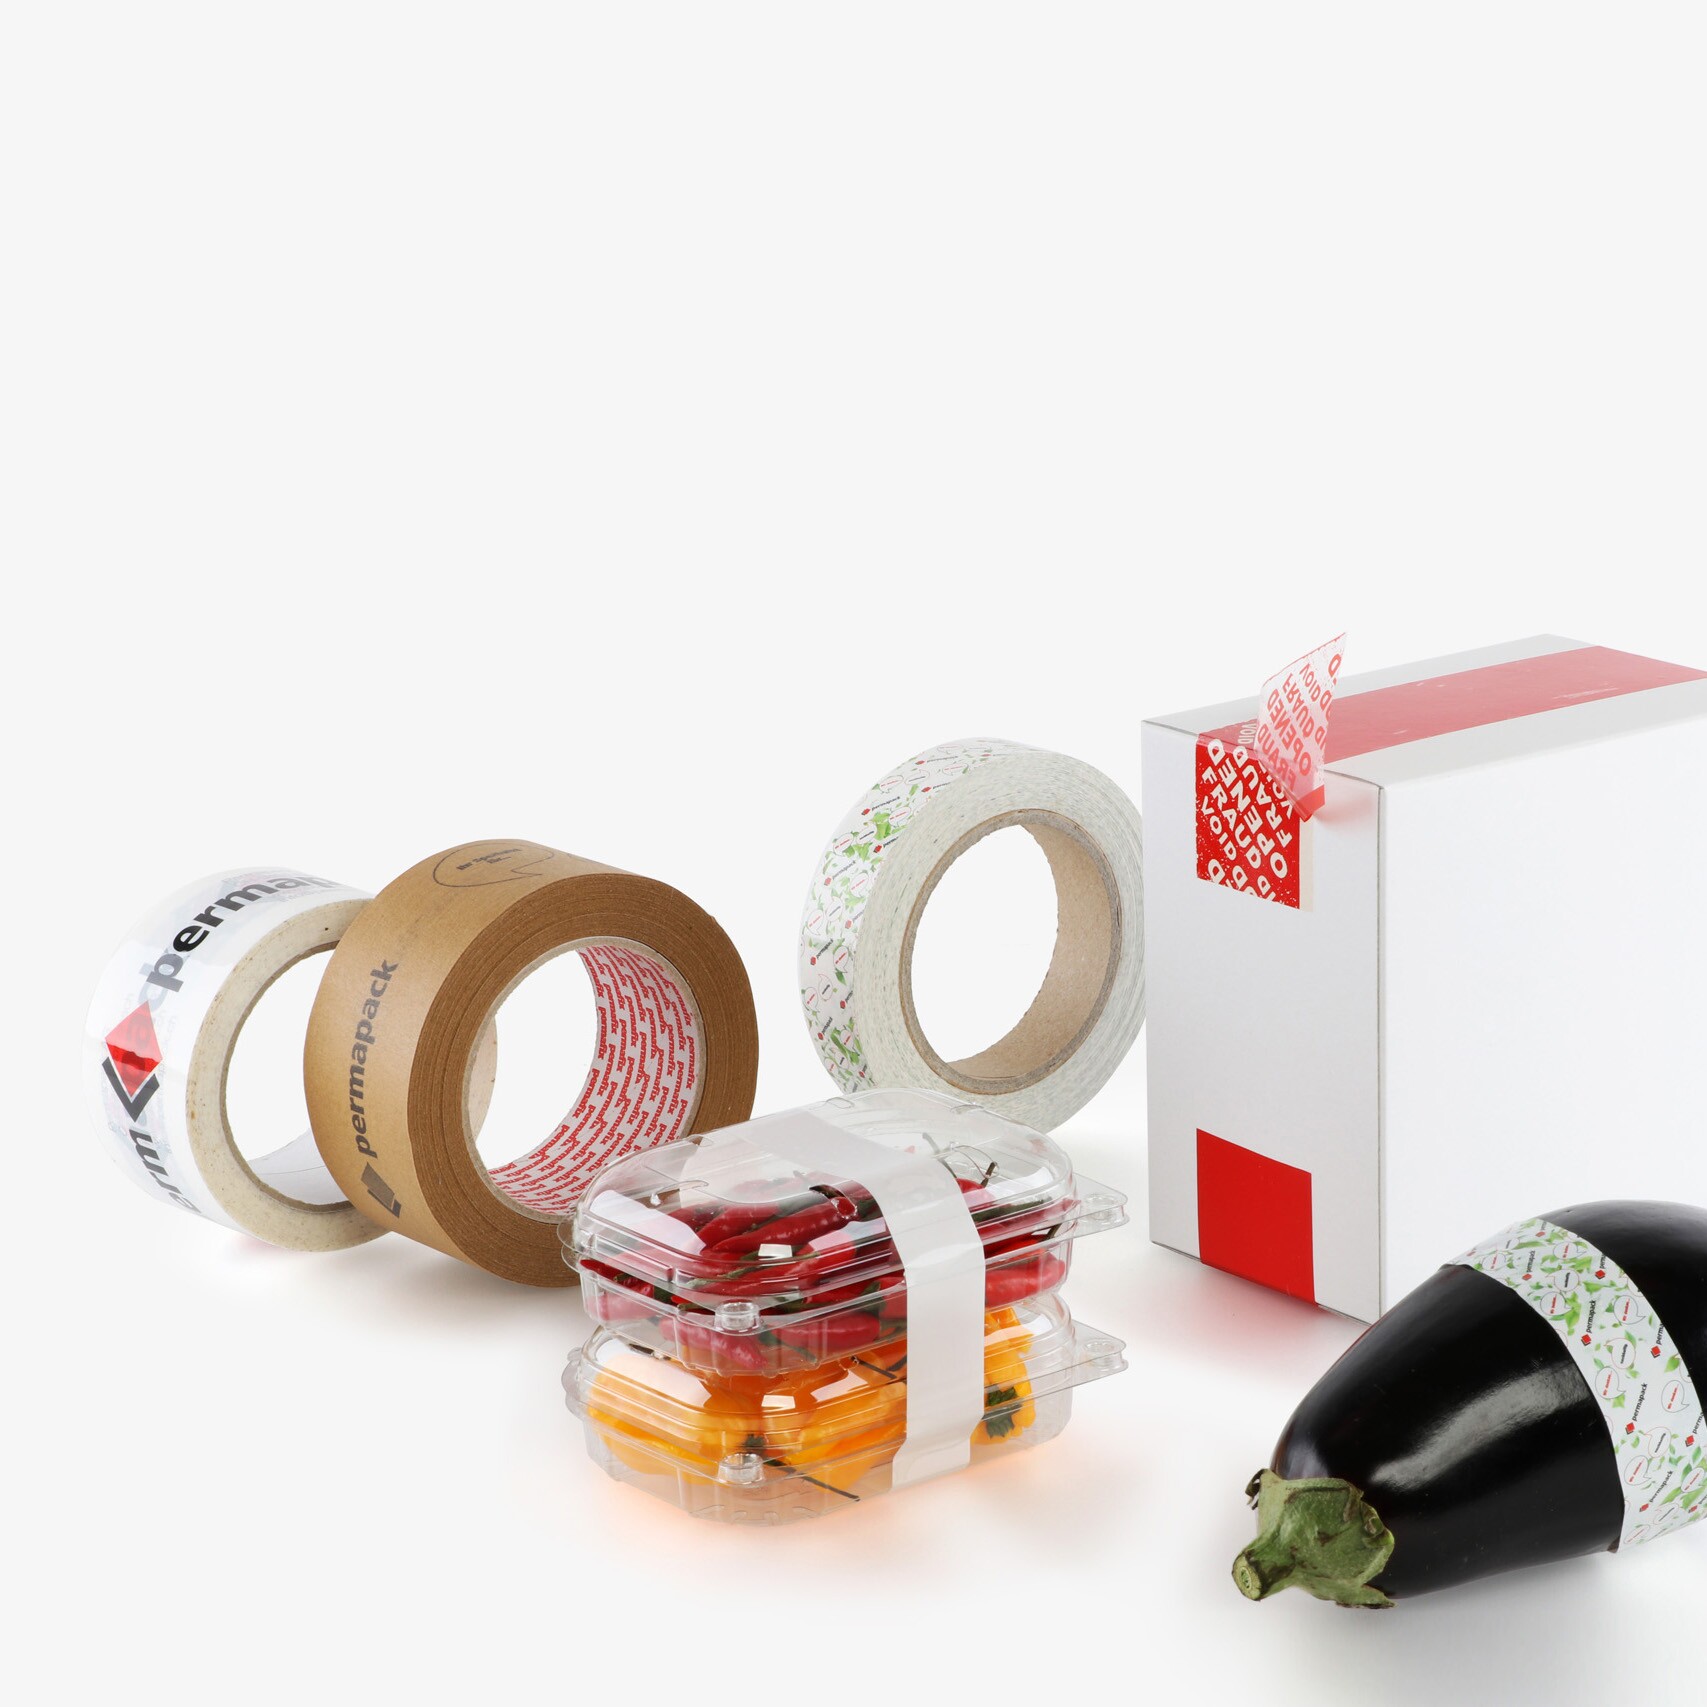 Ensemble de trois rubans adhésifs imprimés, deux barquettes de produits alimentaires entourées d'un ruban adhésif, une boîte avec un ruban adhésif de sécurité et une aubergine avec un ruban adhésif de qualité alimentaire.